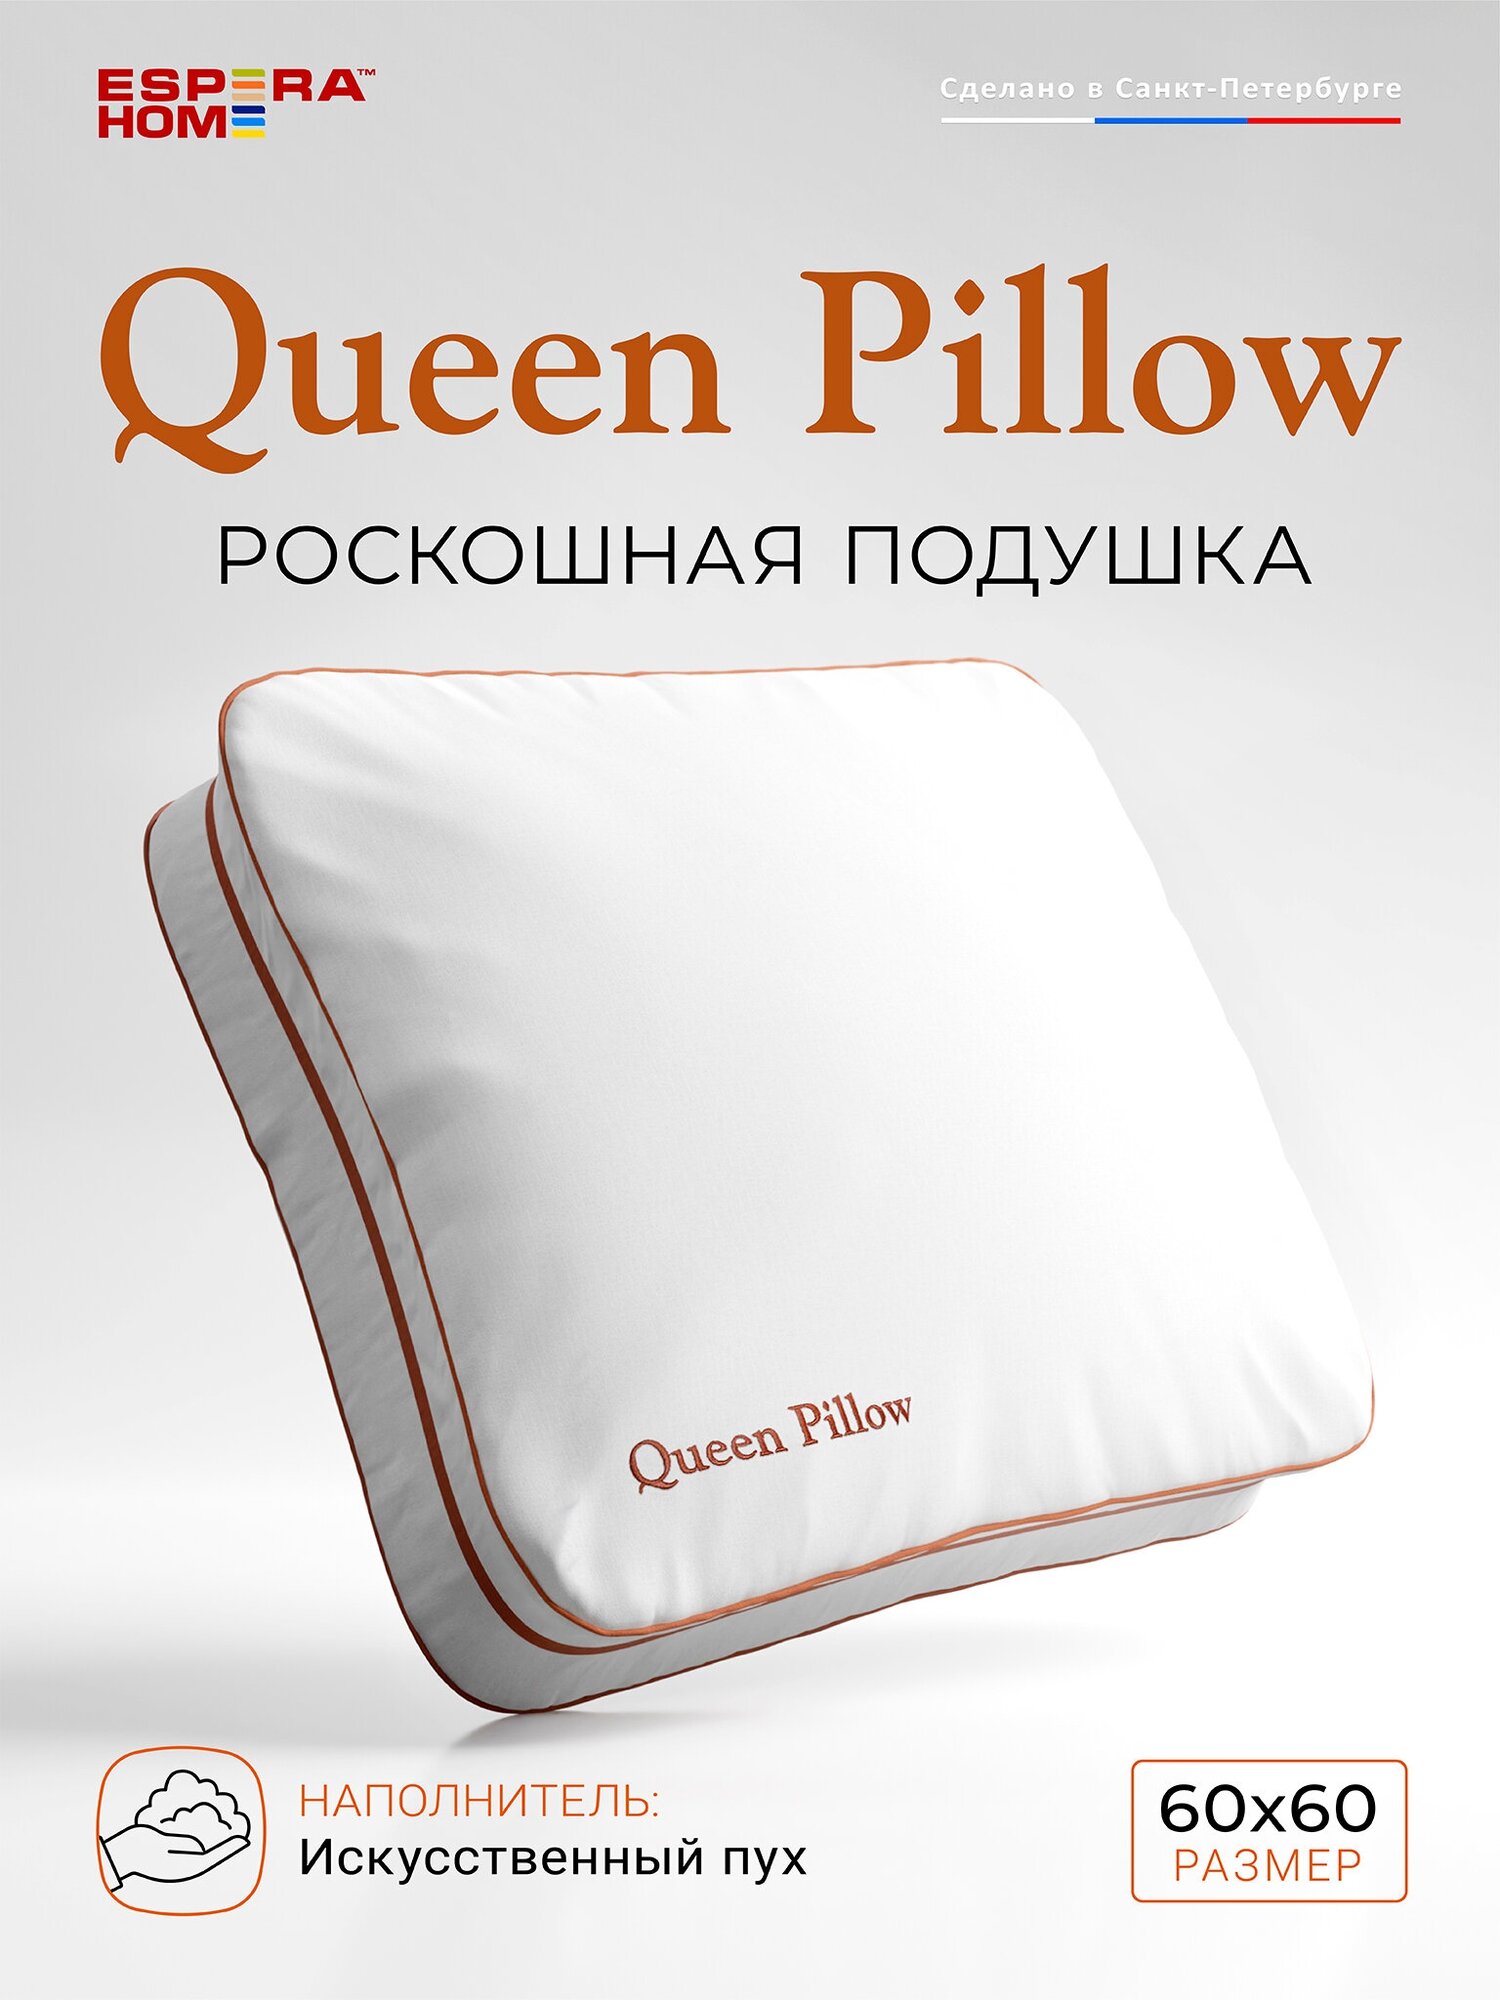 Подушка ESPERA "Queen Pillow" Alaska Red Label, 60х60 см, 100% хлопок, цвет белый